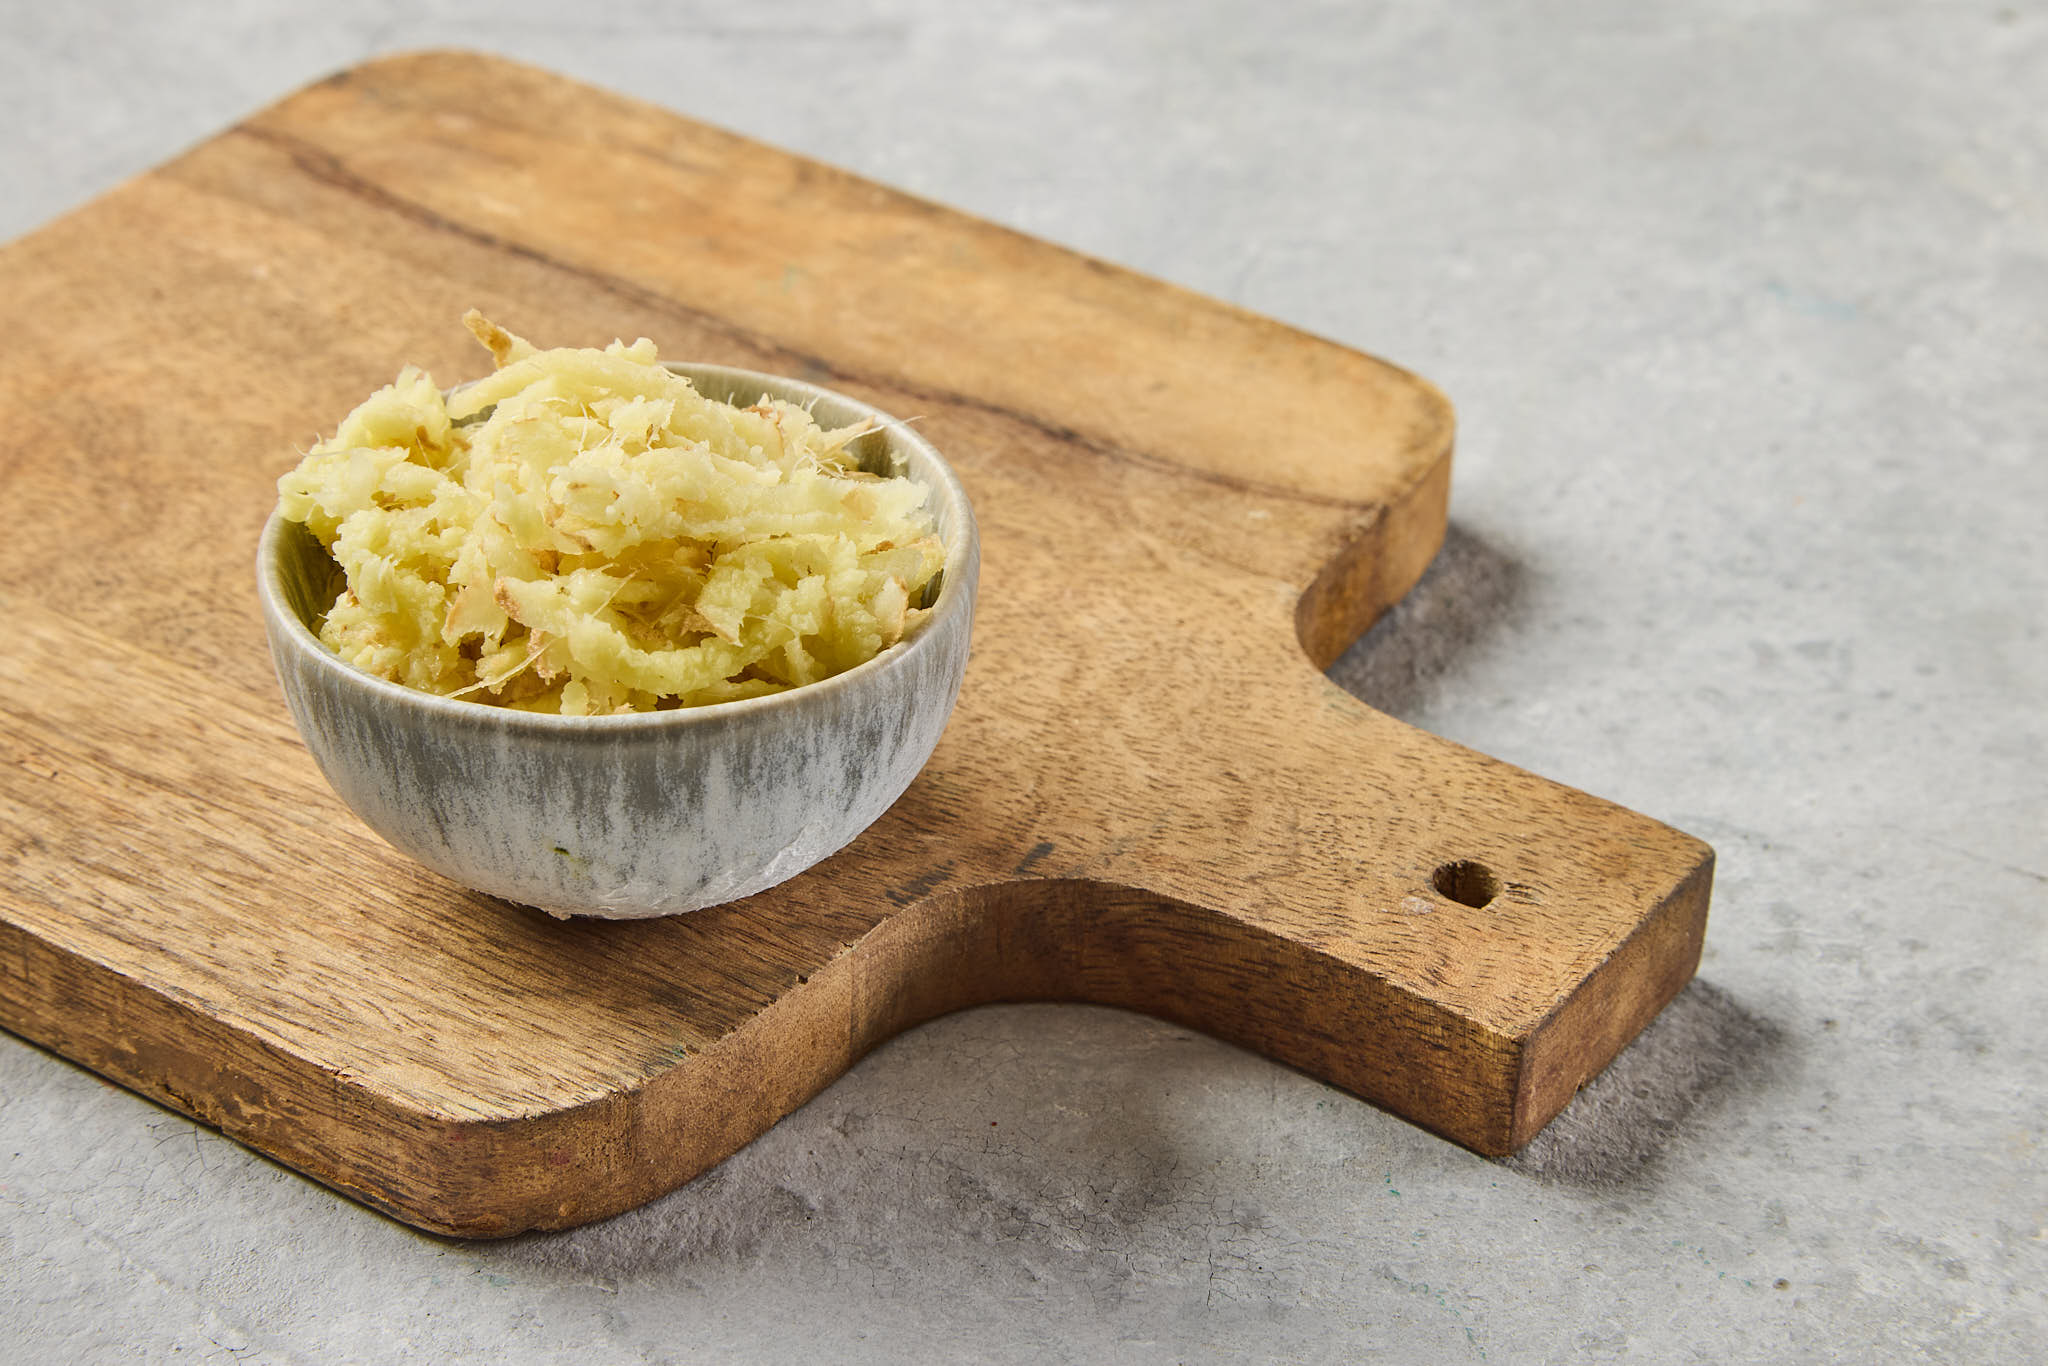 White horseradish – one unit, about 100 ml